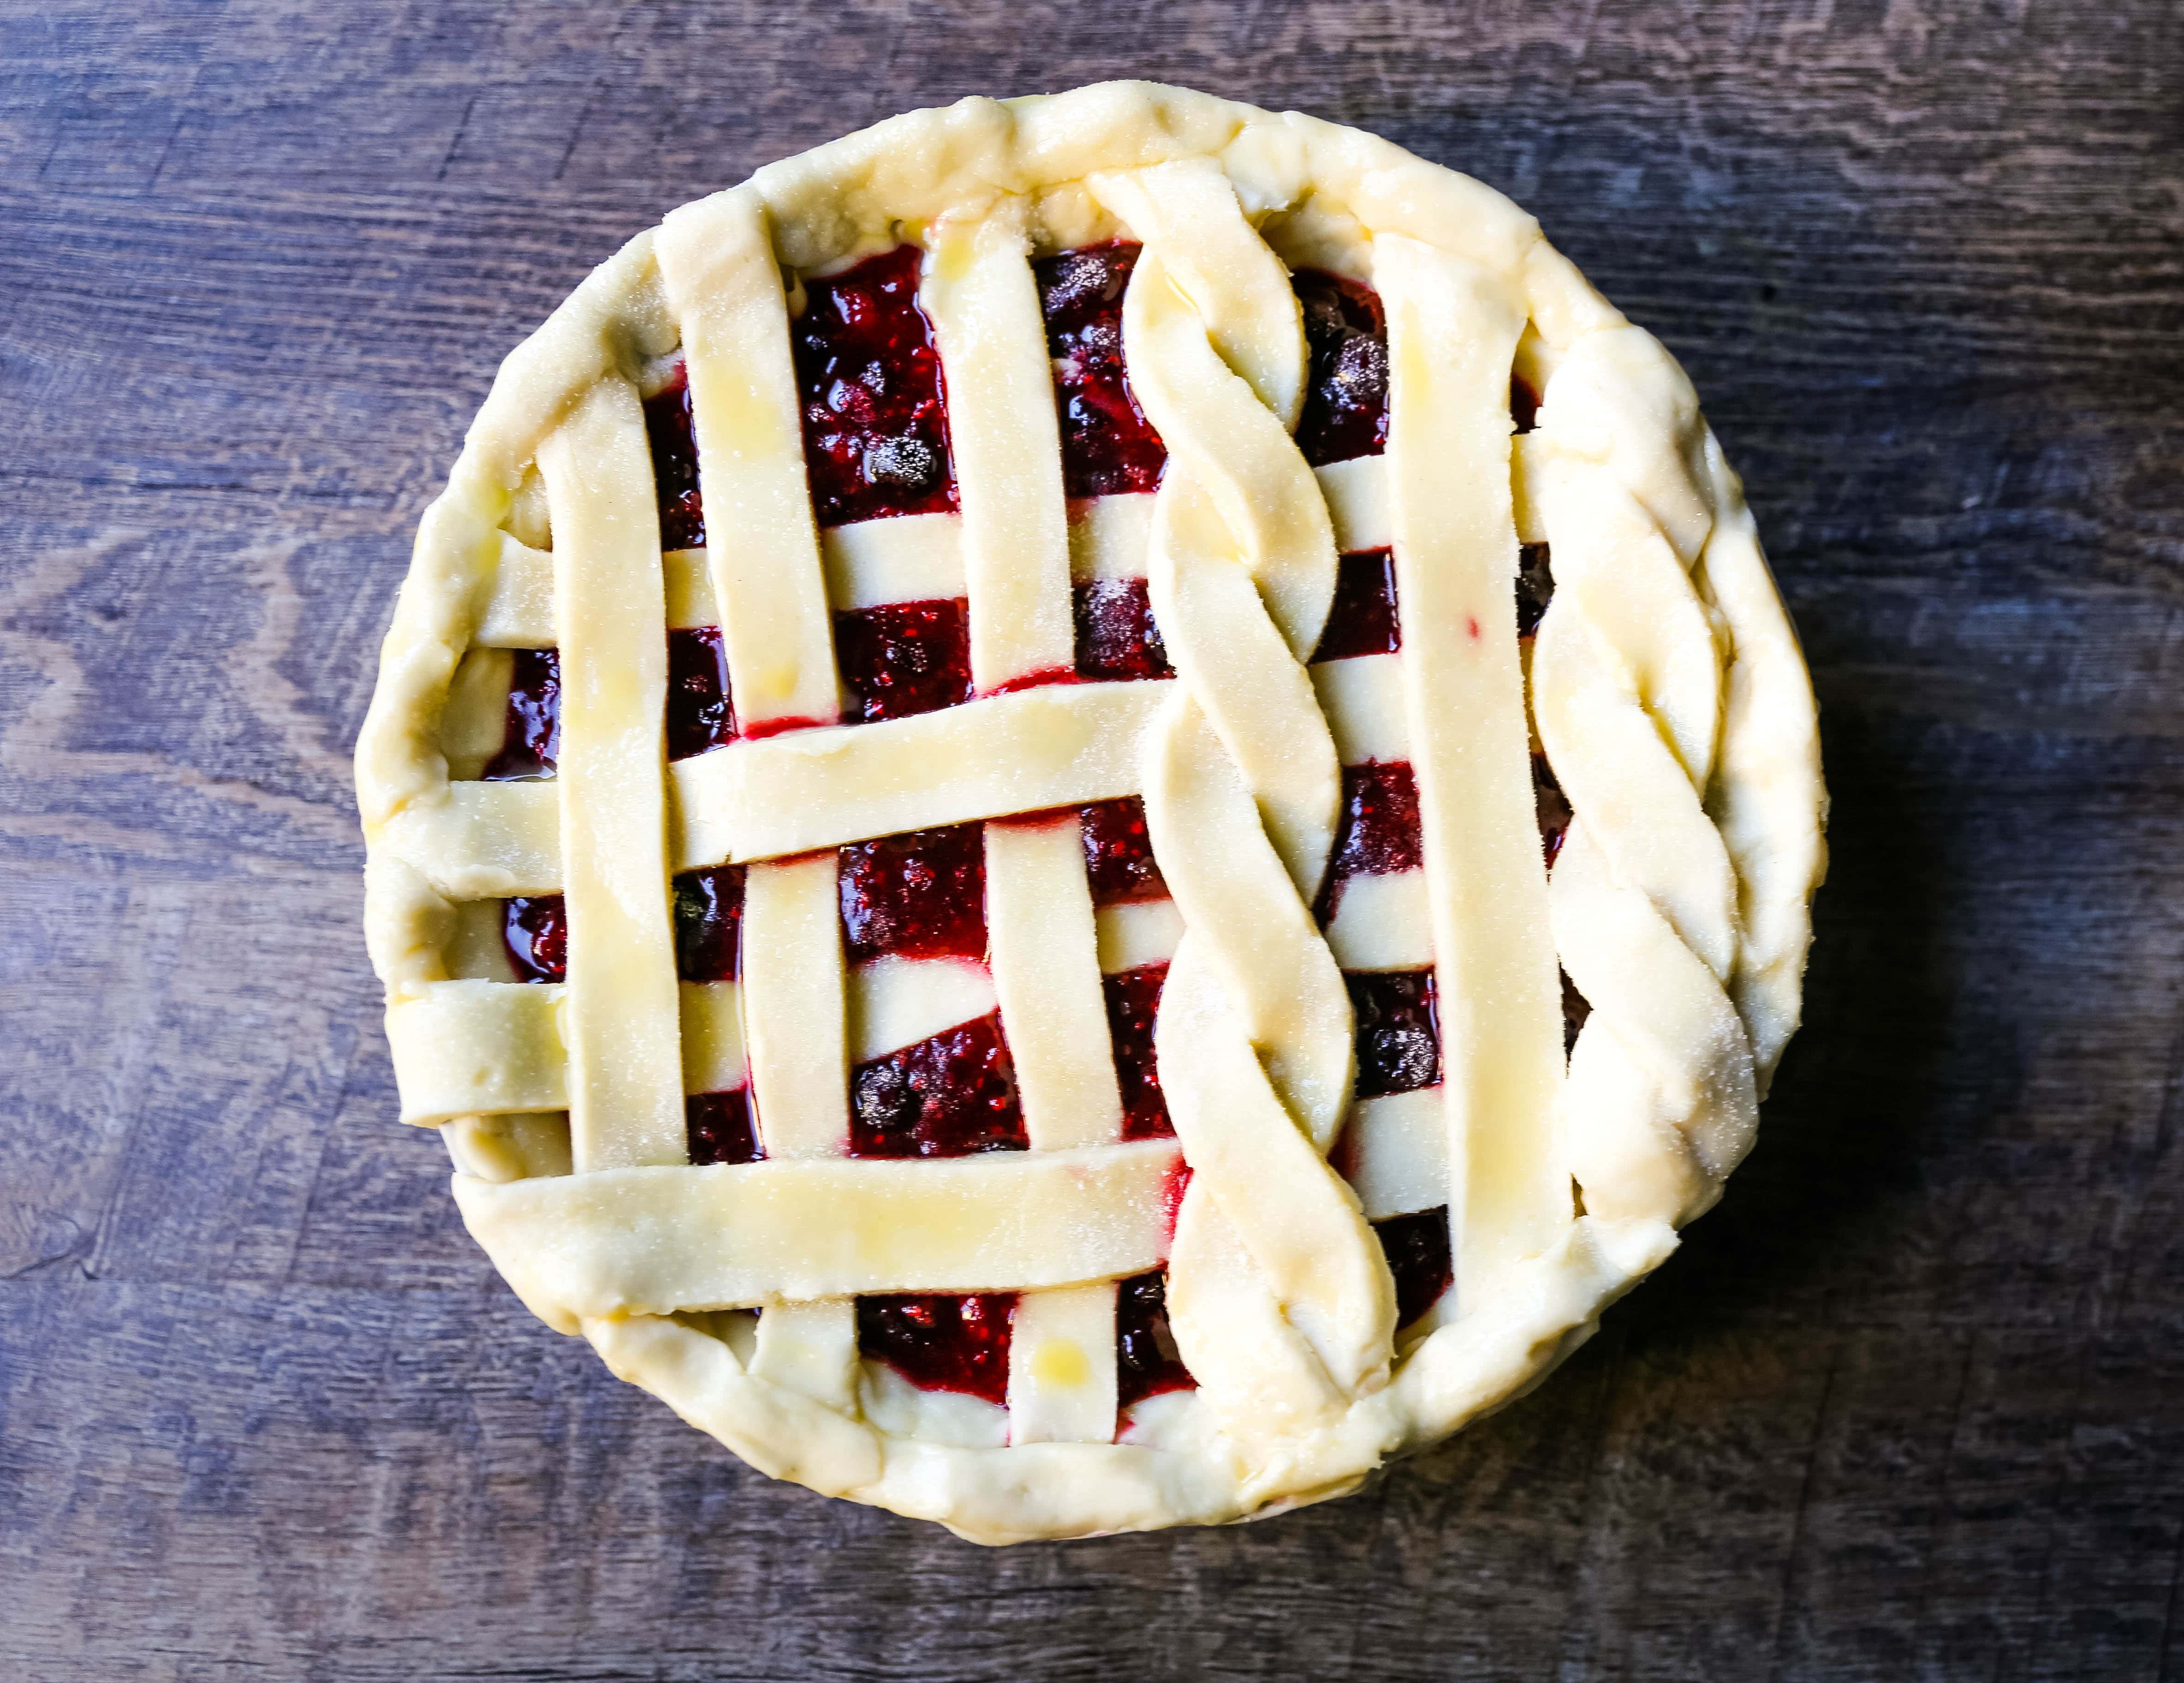 Dreifacher Beerenkuchen. Das beste hausgemachte Beerenkuchen-Rezept mit einer buttrigen Kuchenkruste. Toppen Sie es mit Vanilleeis und Sie haben das perfekte Beeren-Dessert! Das beste Beerenkuchen-Rezept. www.modernhoney.com #berrypie #pie #berries #tripleberrypie #thanksgiving